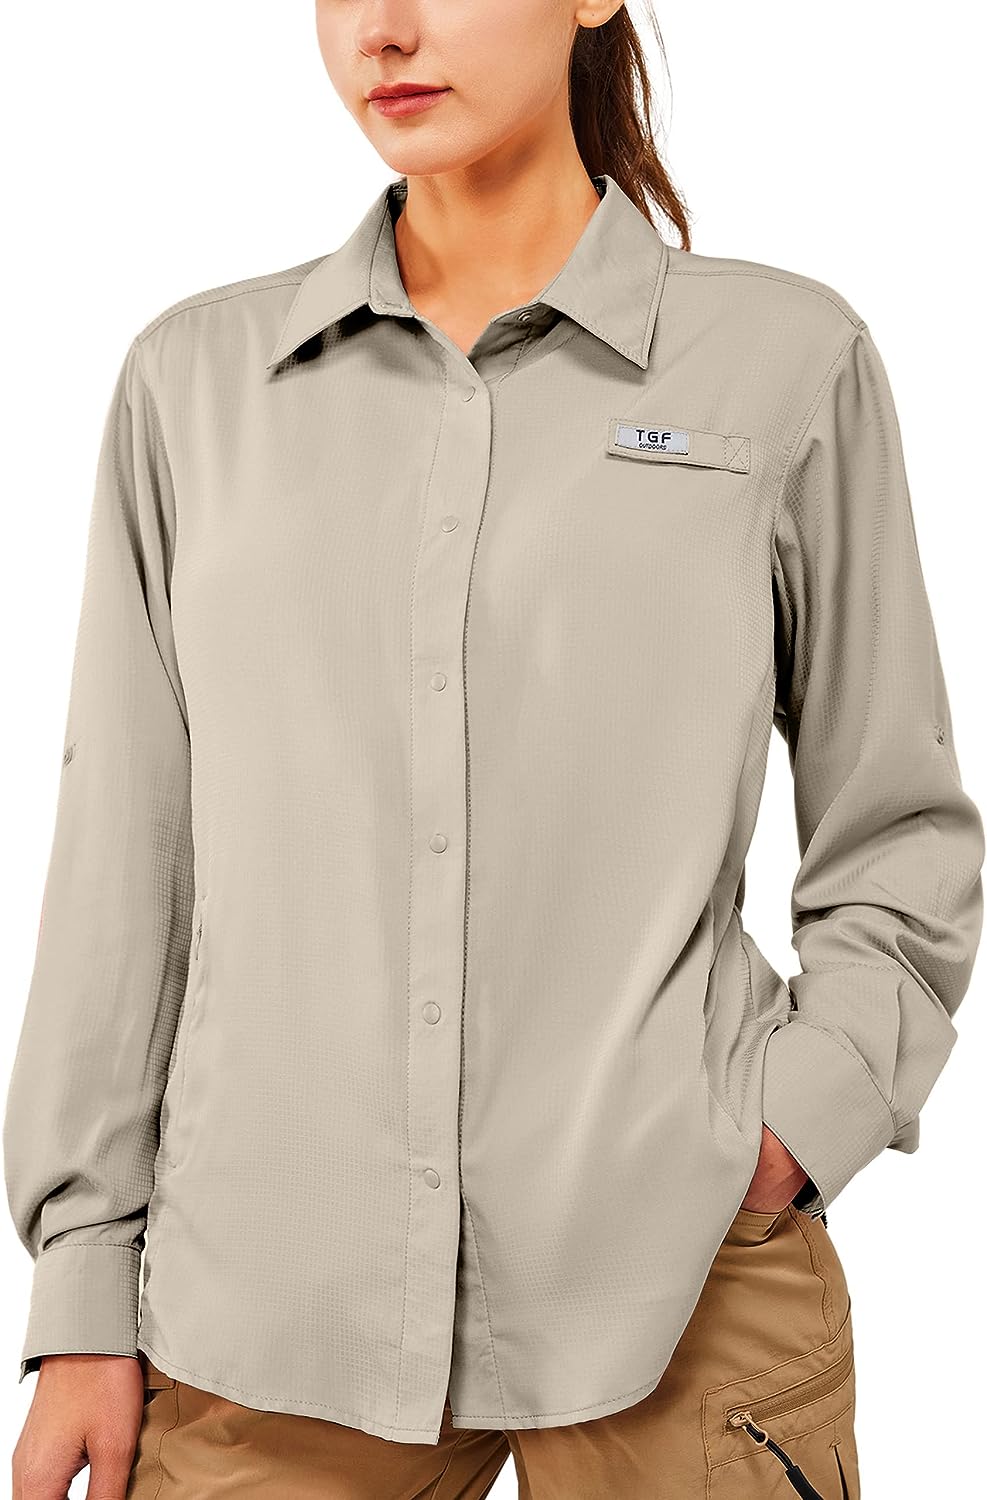 TGF Women's Sun Protection Fishing Shirts Long Sleeve Button Up Shirt with  Zippe